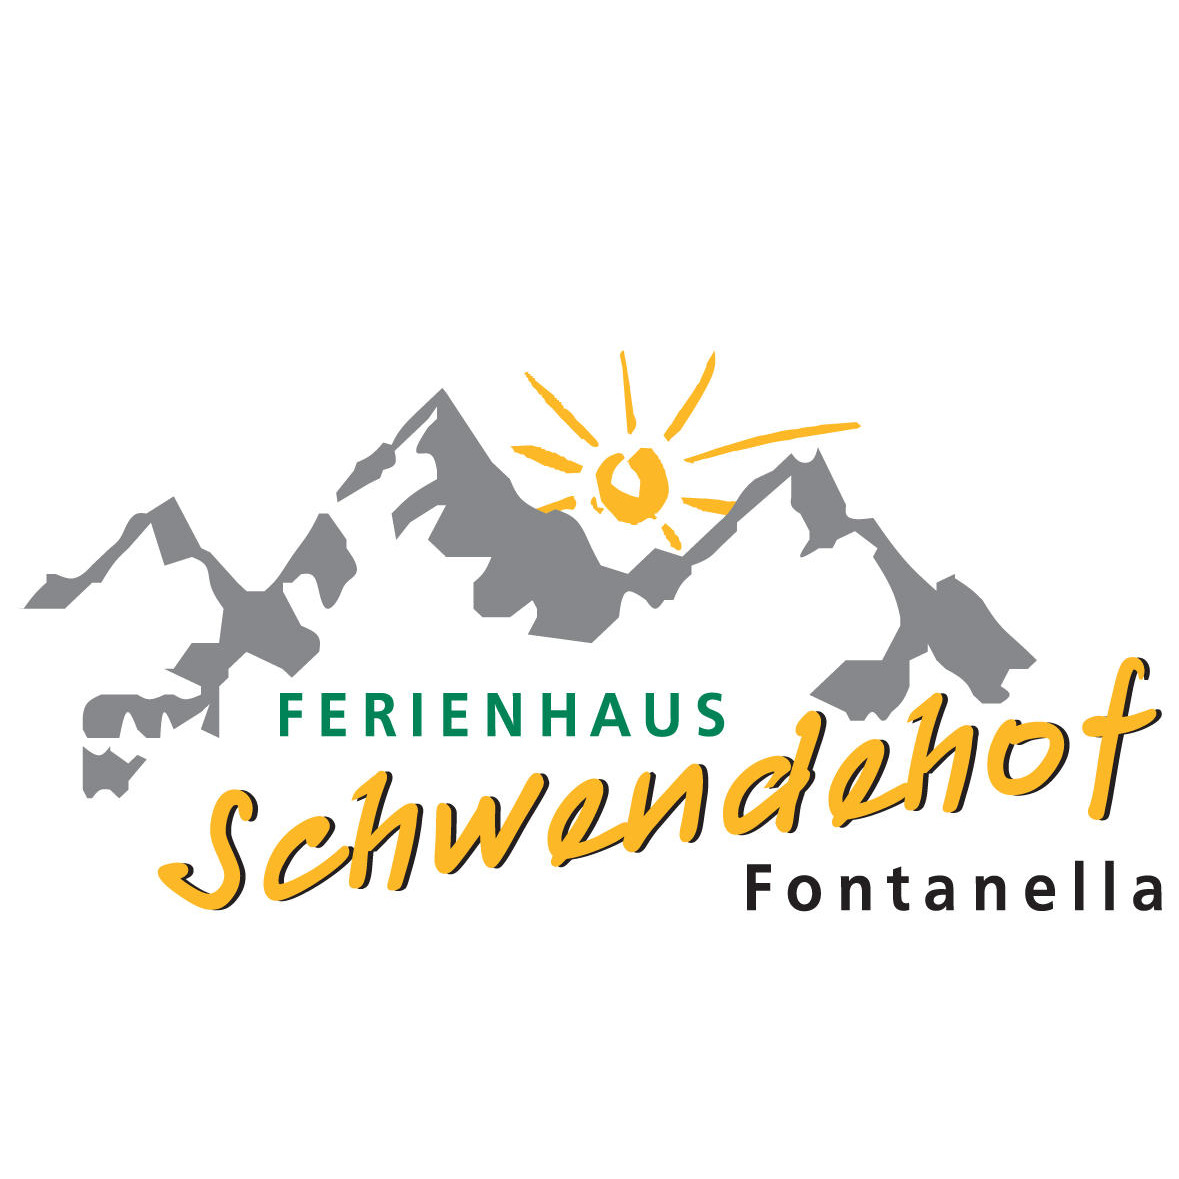 Ferienhaus Schwendehof Logo